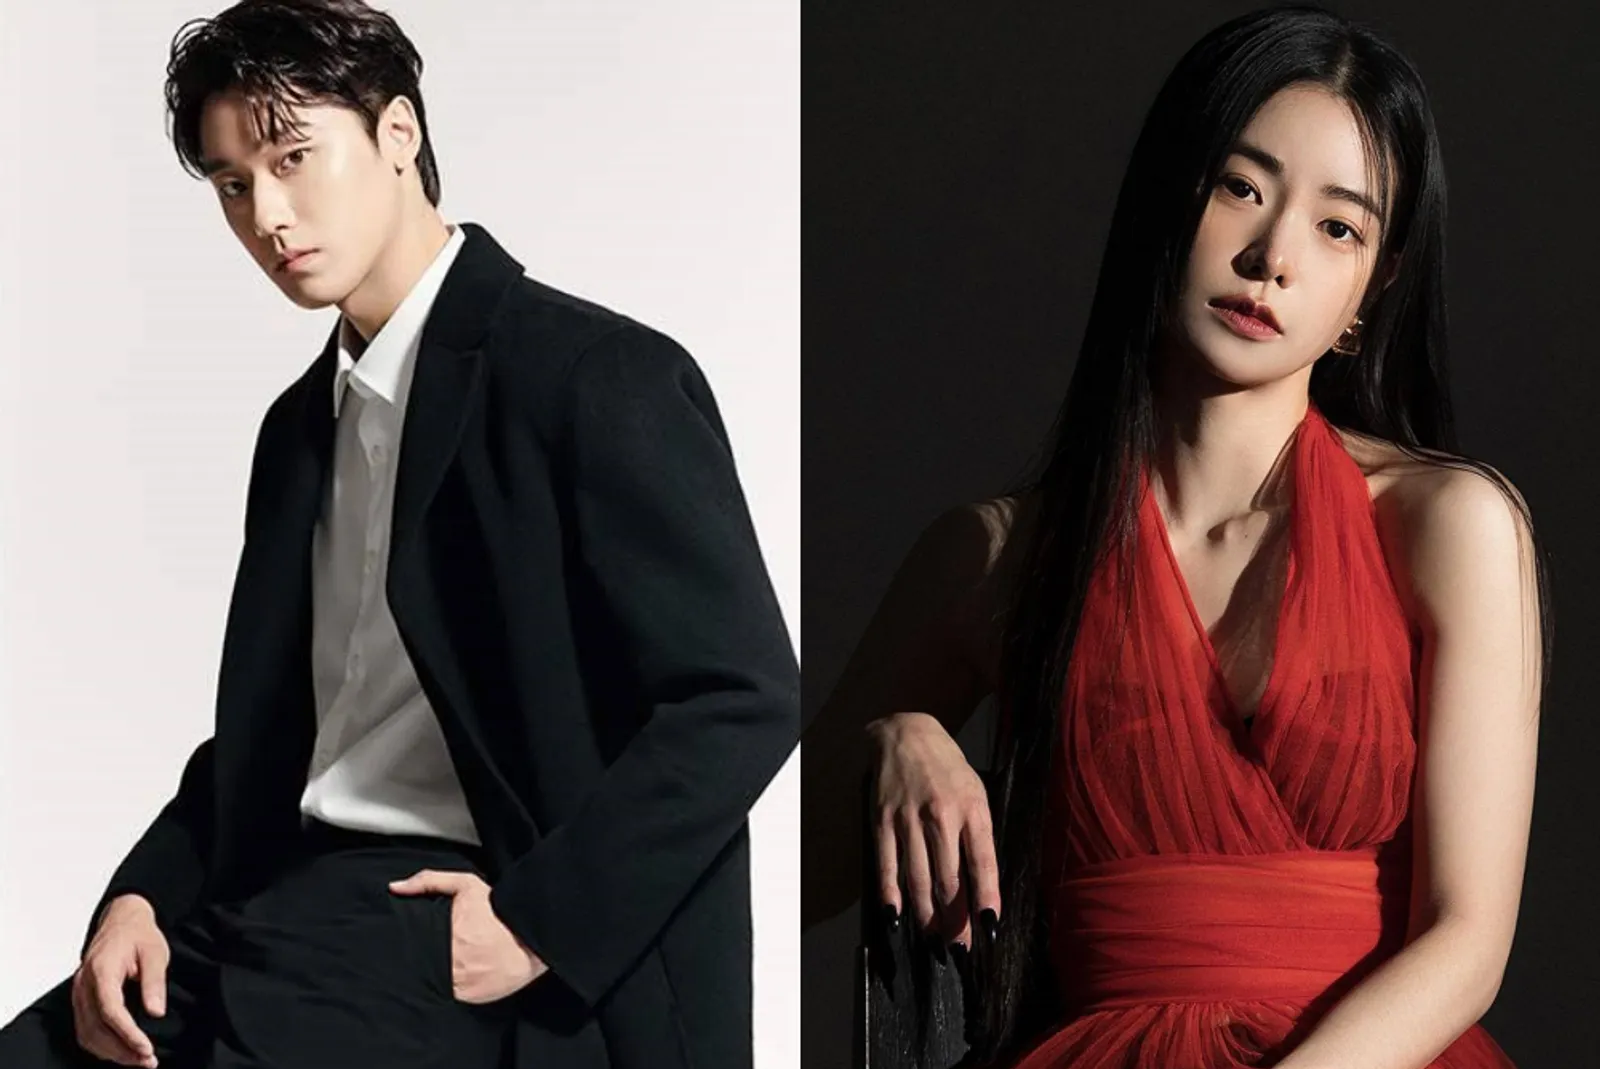 Lim Ji Yeon Cerita tentang Tipe Pasangan Idaman, Mirip Lee Do Hyun?